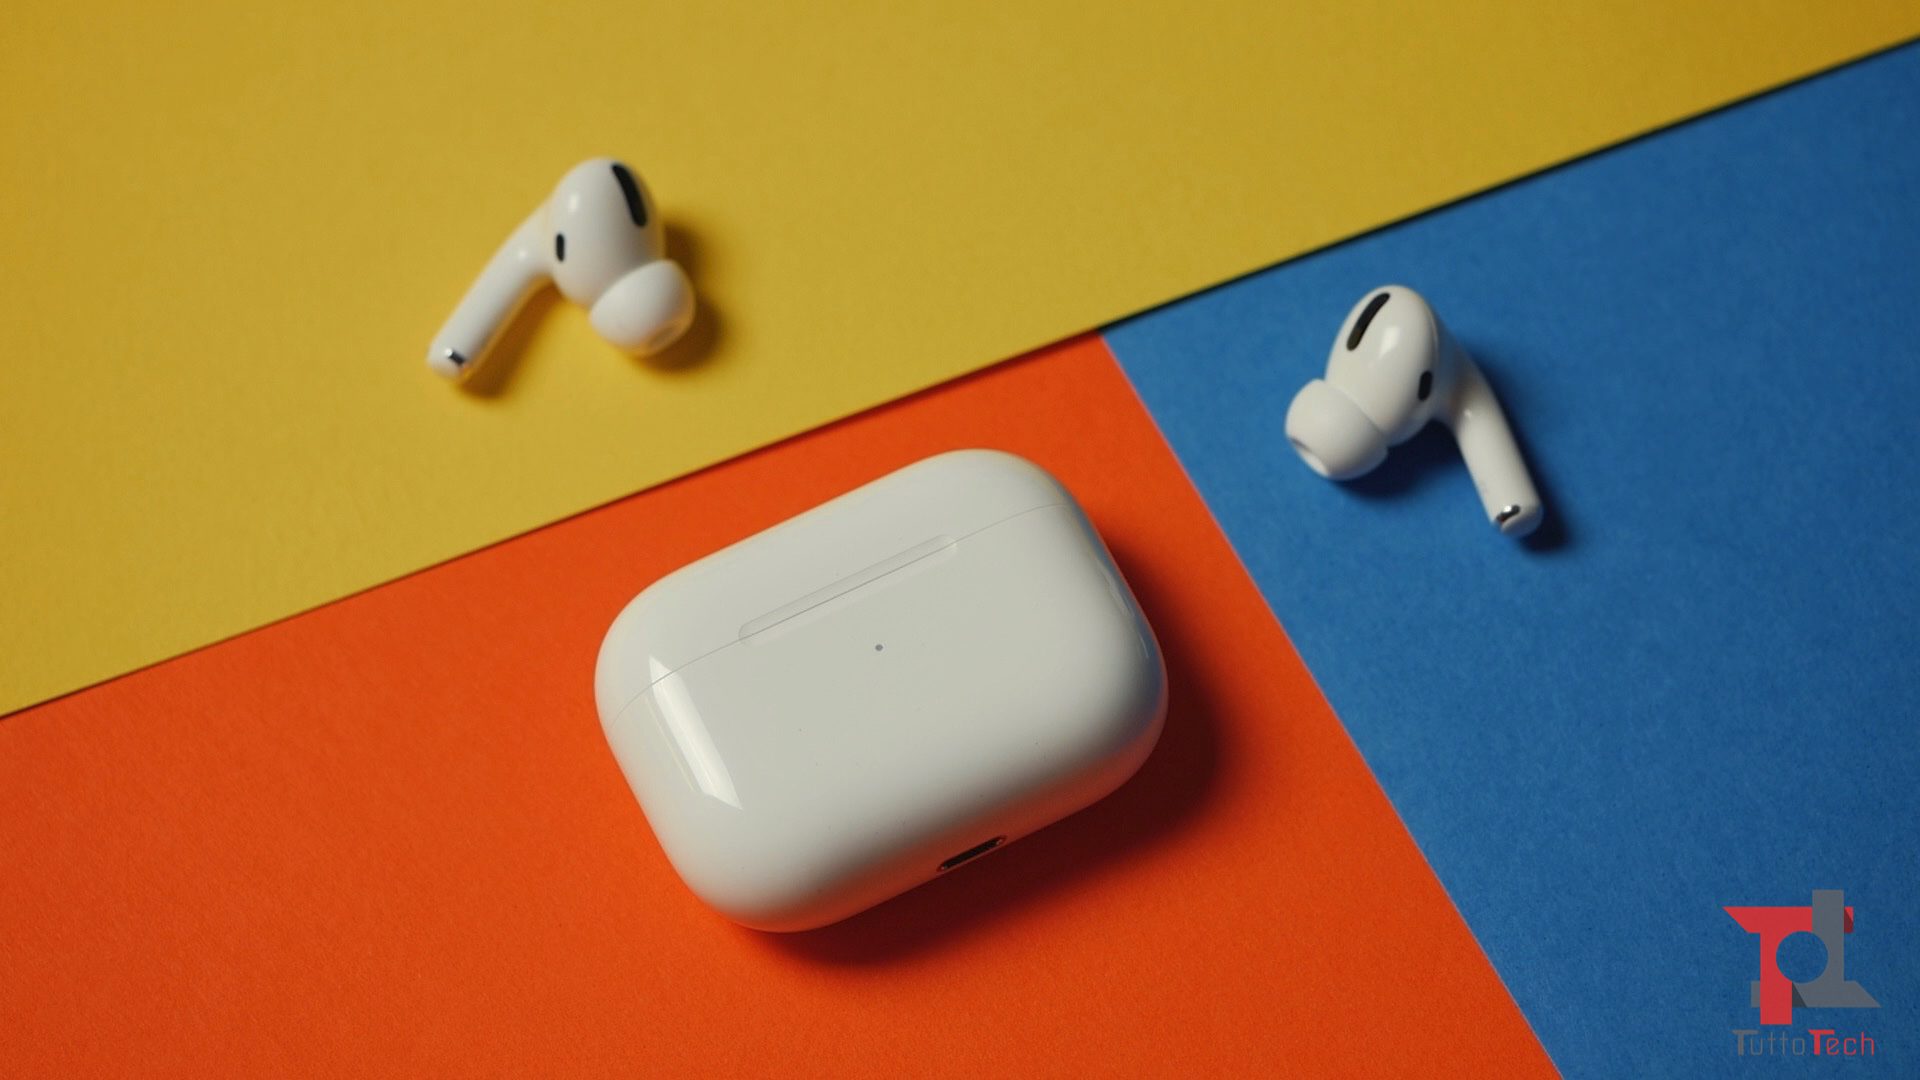 يتيح لك تطبيق CAPod الاستفادة بشكل أفضل من سماعات الرأس Apple AirPods على Android 1